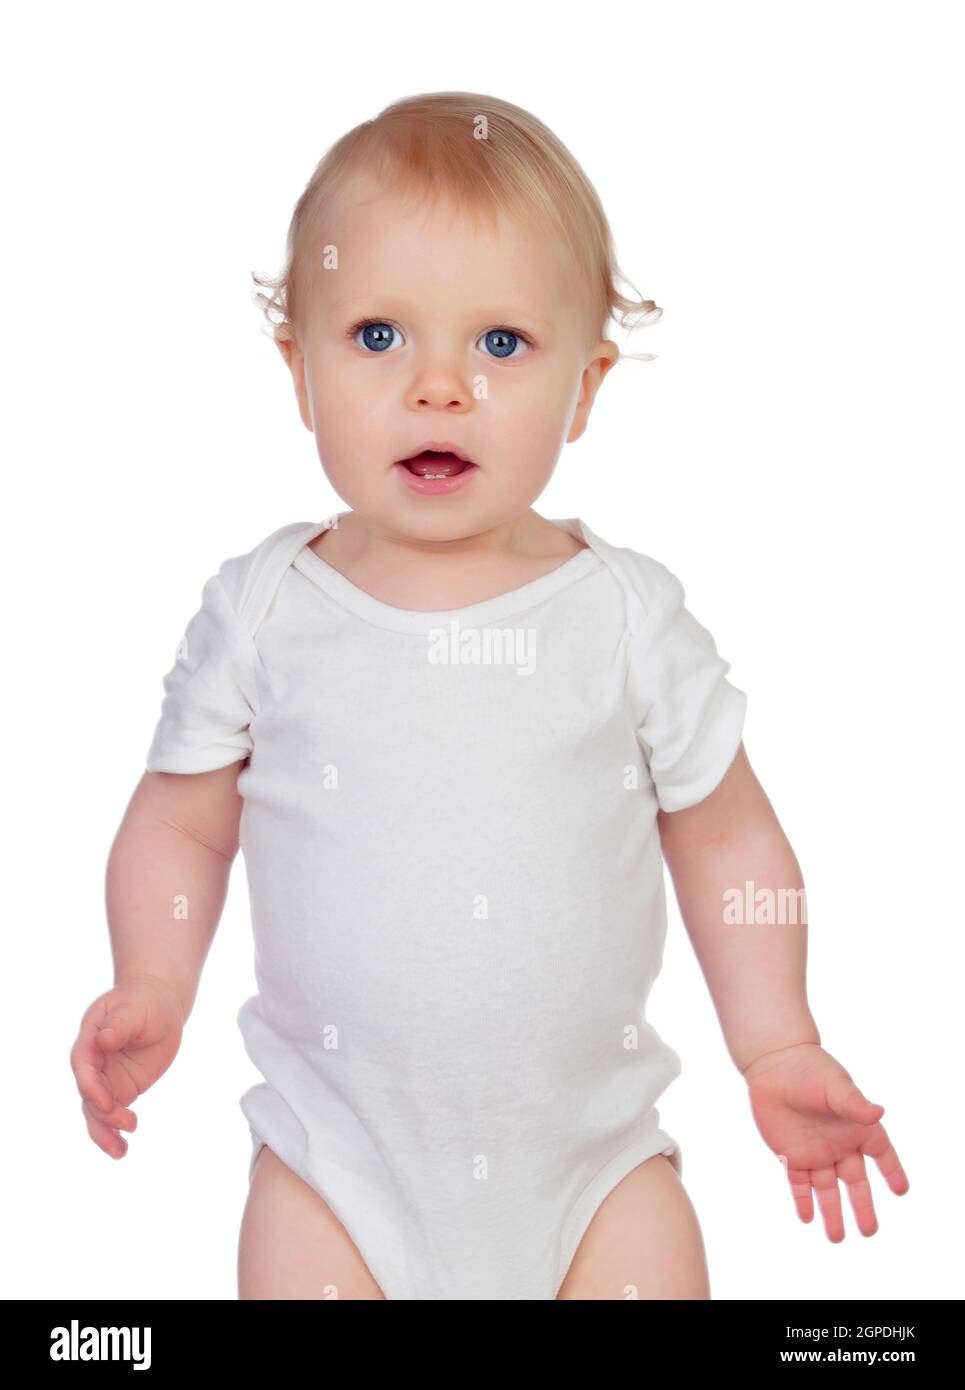 Un petit bébé avec des yeux bleus et des cheveux blonds tandis que la caméra regarde permanent Banque D'Images